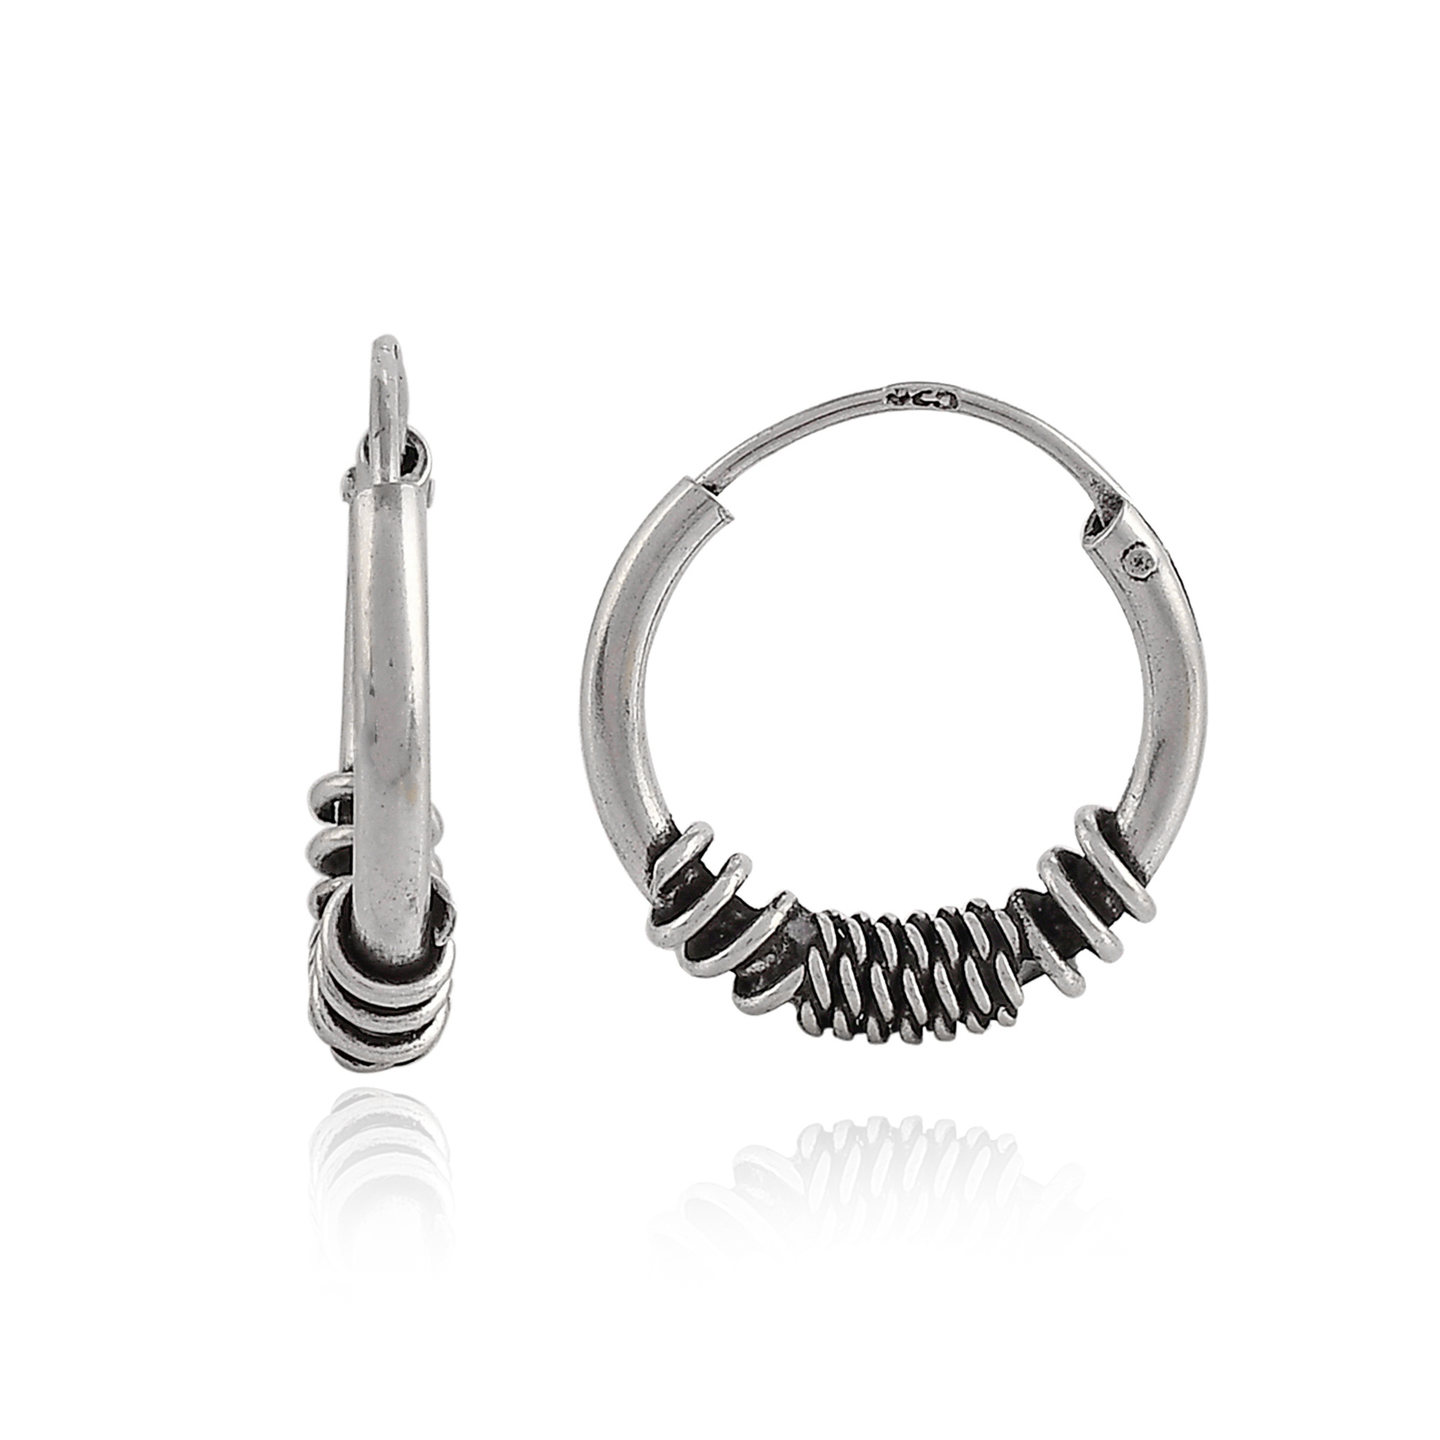 925 Sterling Silver Oxidized Bali Hoop Earrings for Women, Kids and Girls